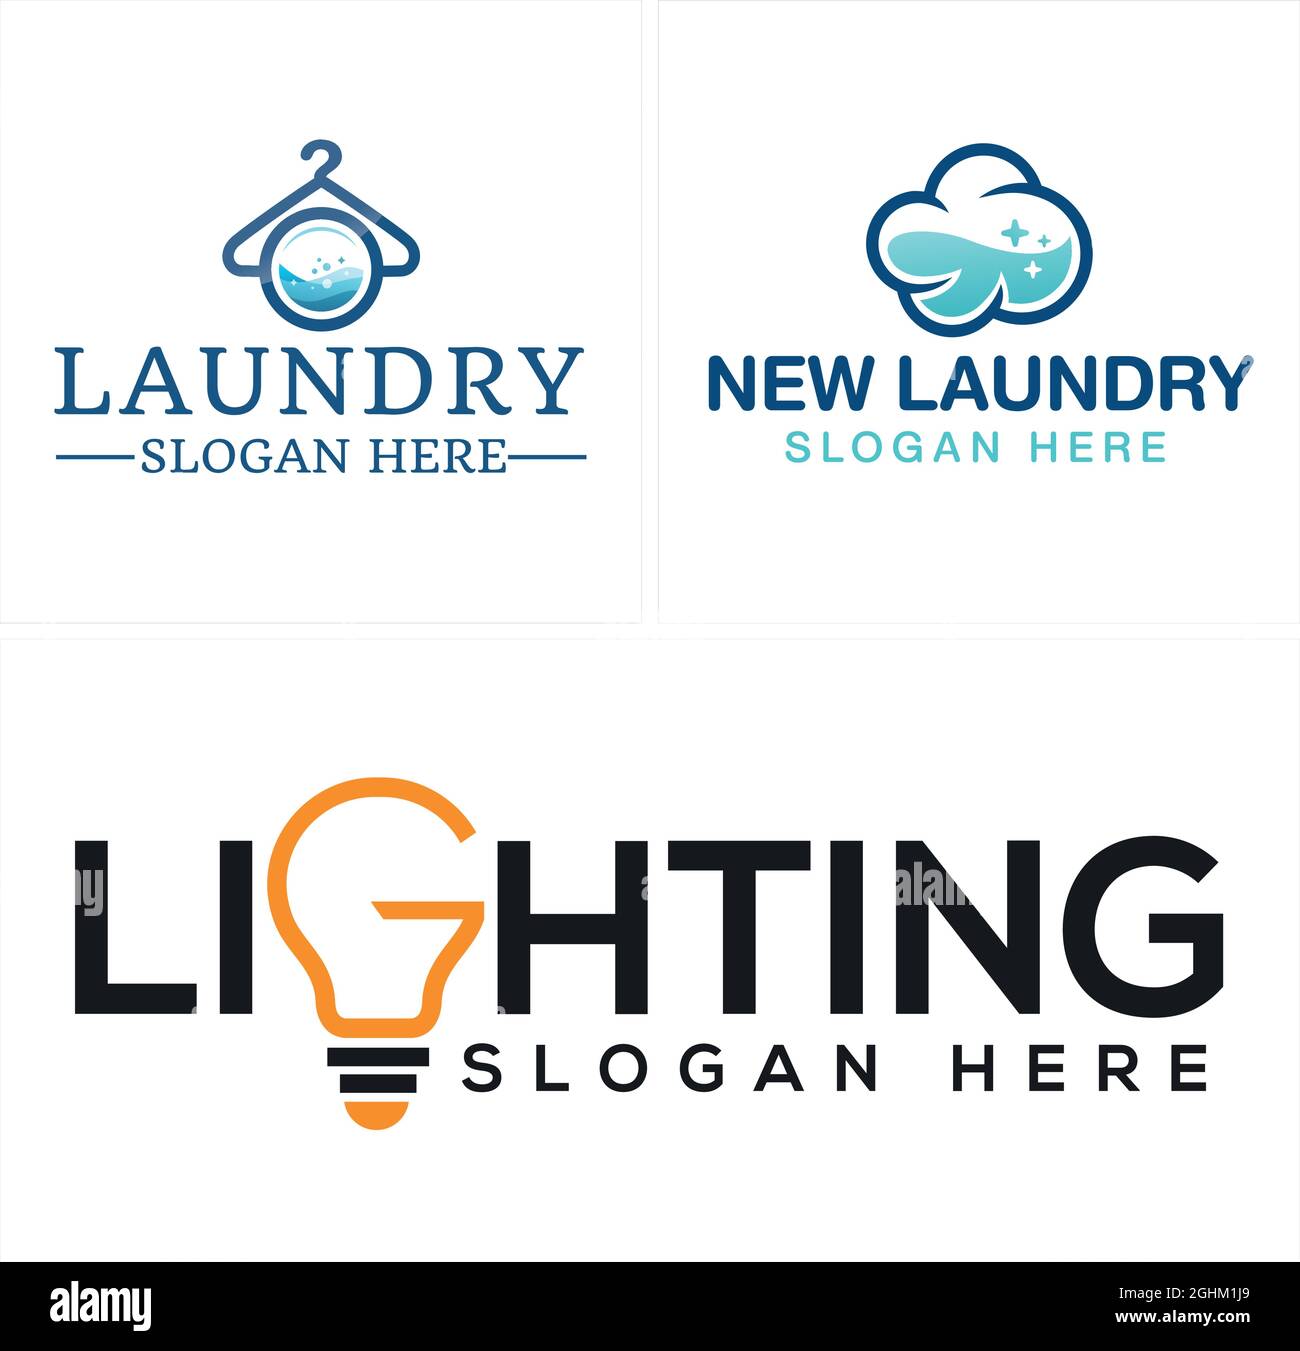 Laundry lighting service hanger light bulb vector logo design Stock Vector